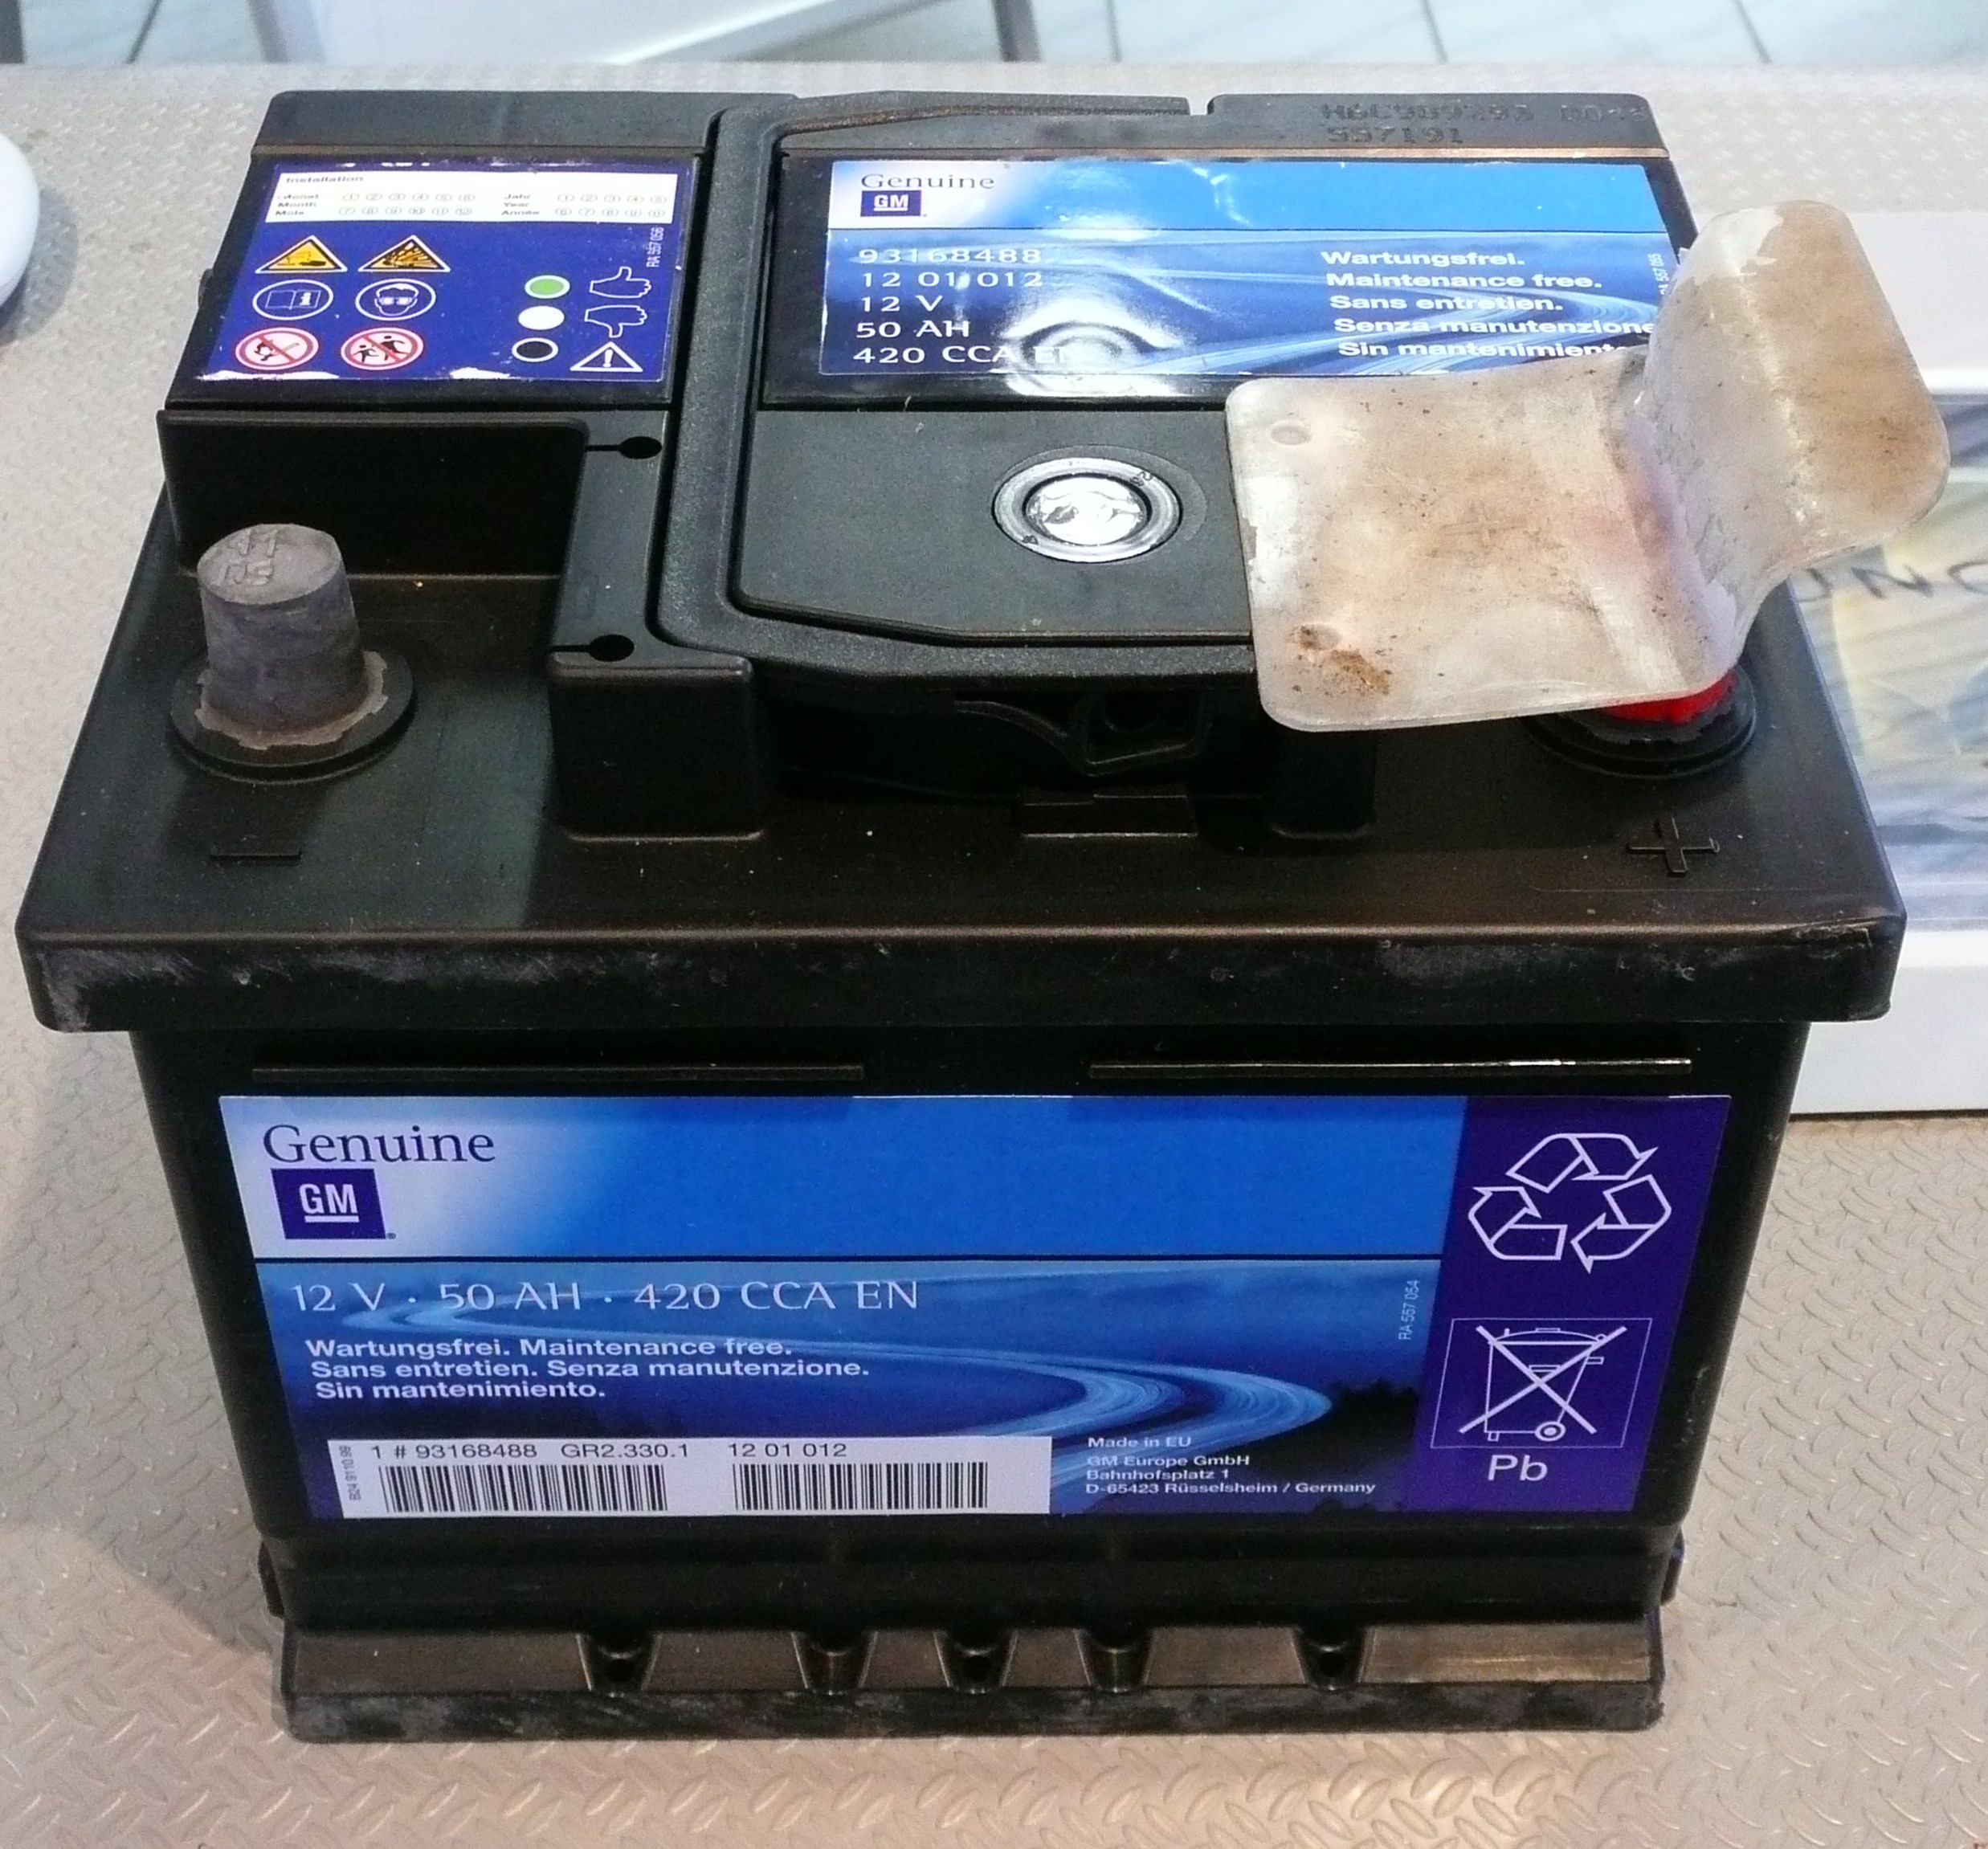 File:Starterbatterie 12 V 50 AH.JPG - Wikimedia Commons